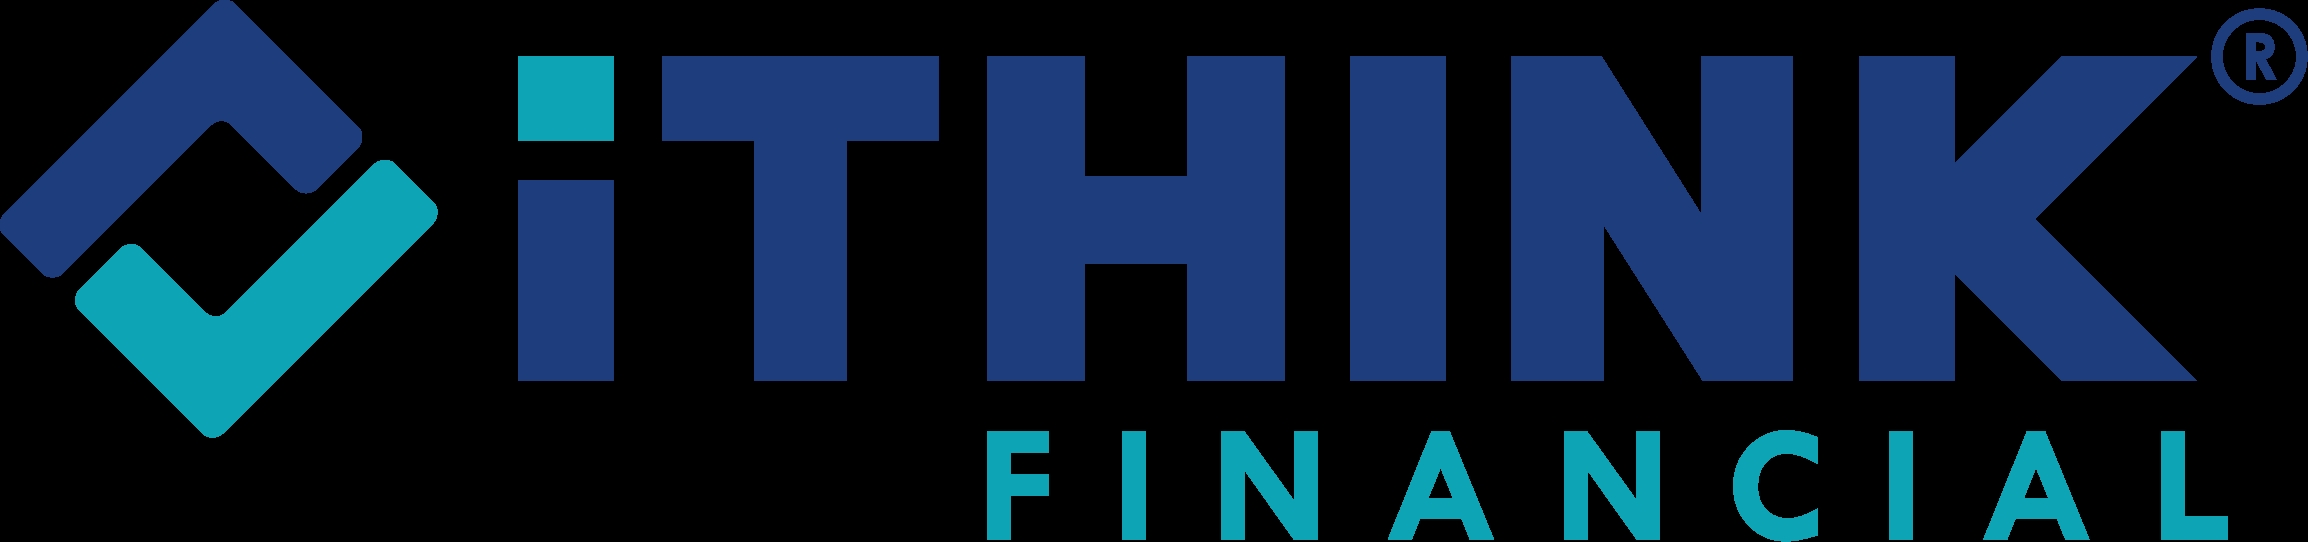 iTHINK_Financial_Logo_Main_NoTag_RegMark_FINAL.png